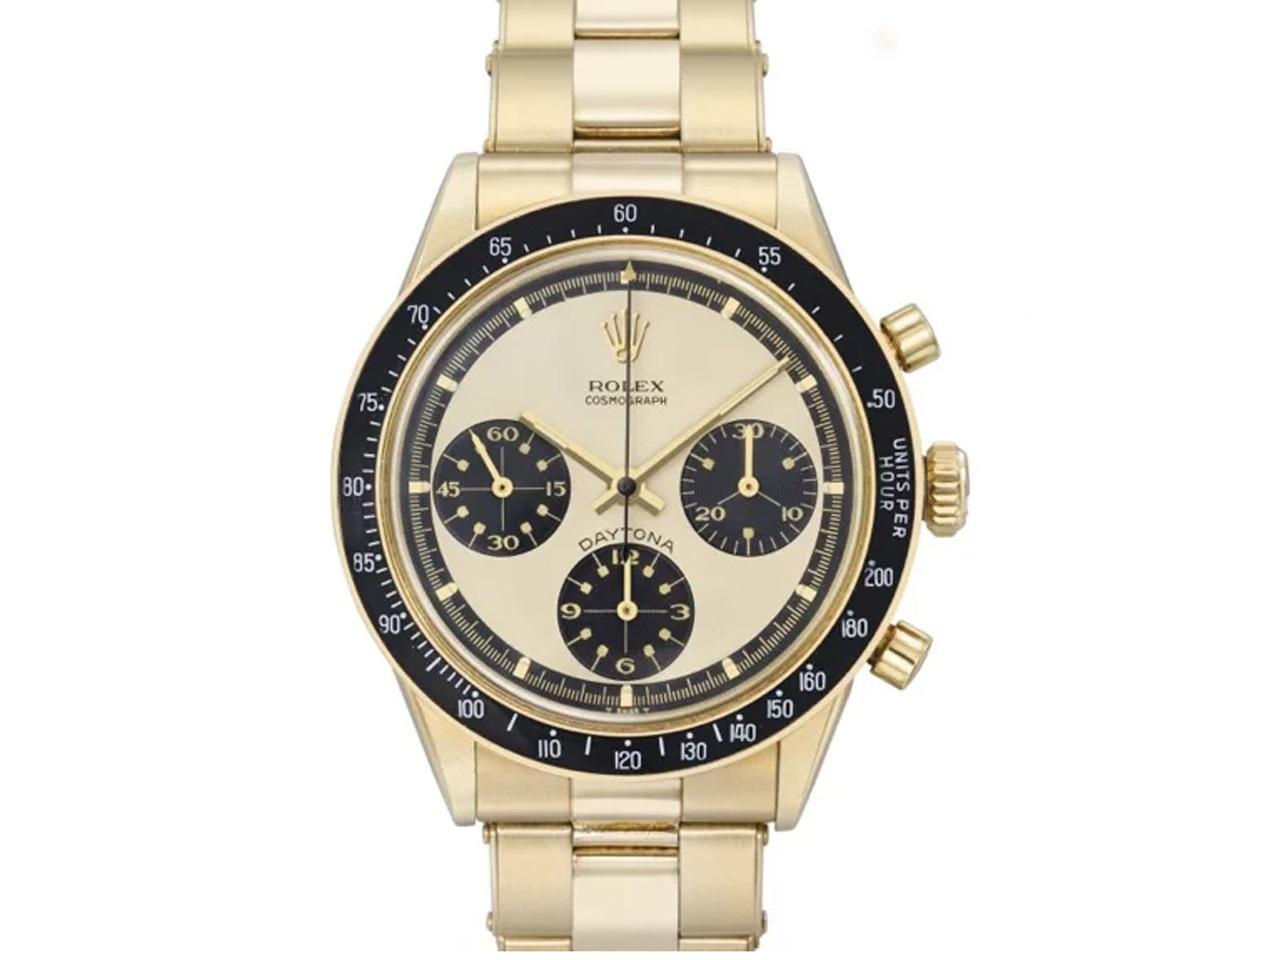 ロレックス デイトナ ポールニューマン 6241 金無垢シャンパンダイアルの詳細とは 時計買取のピアゾ